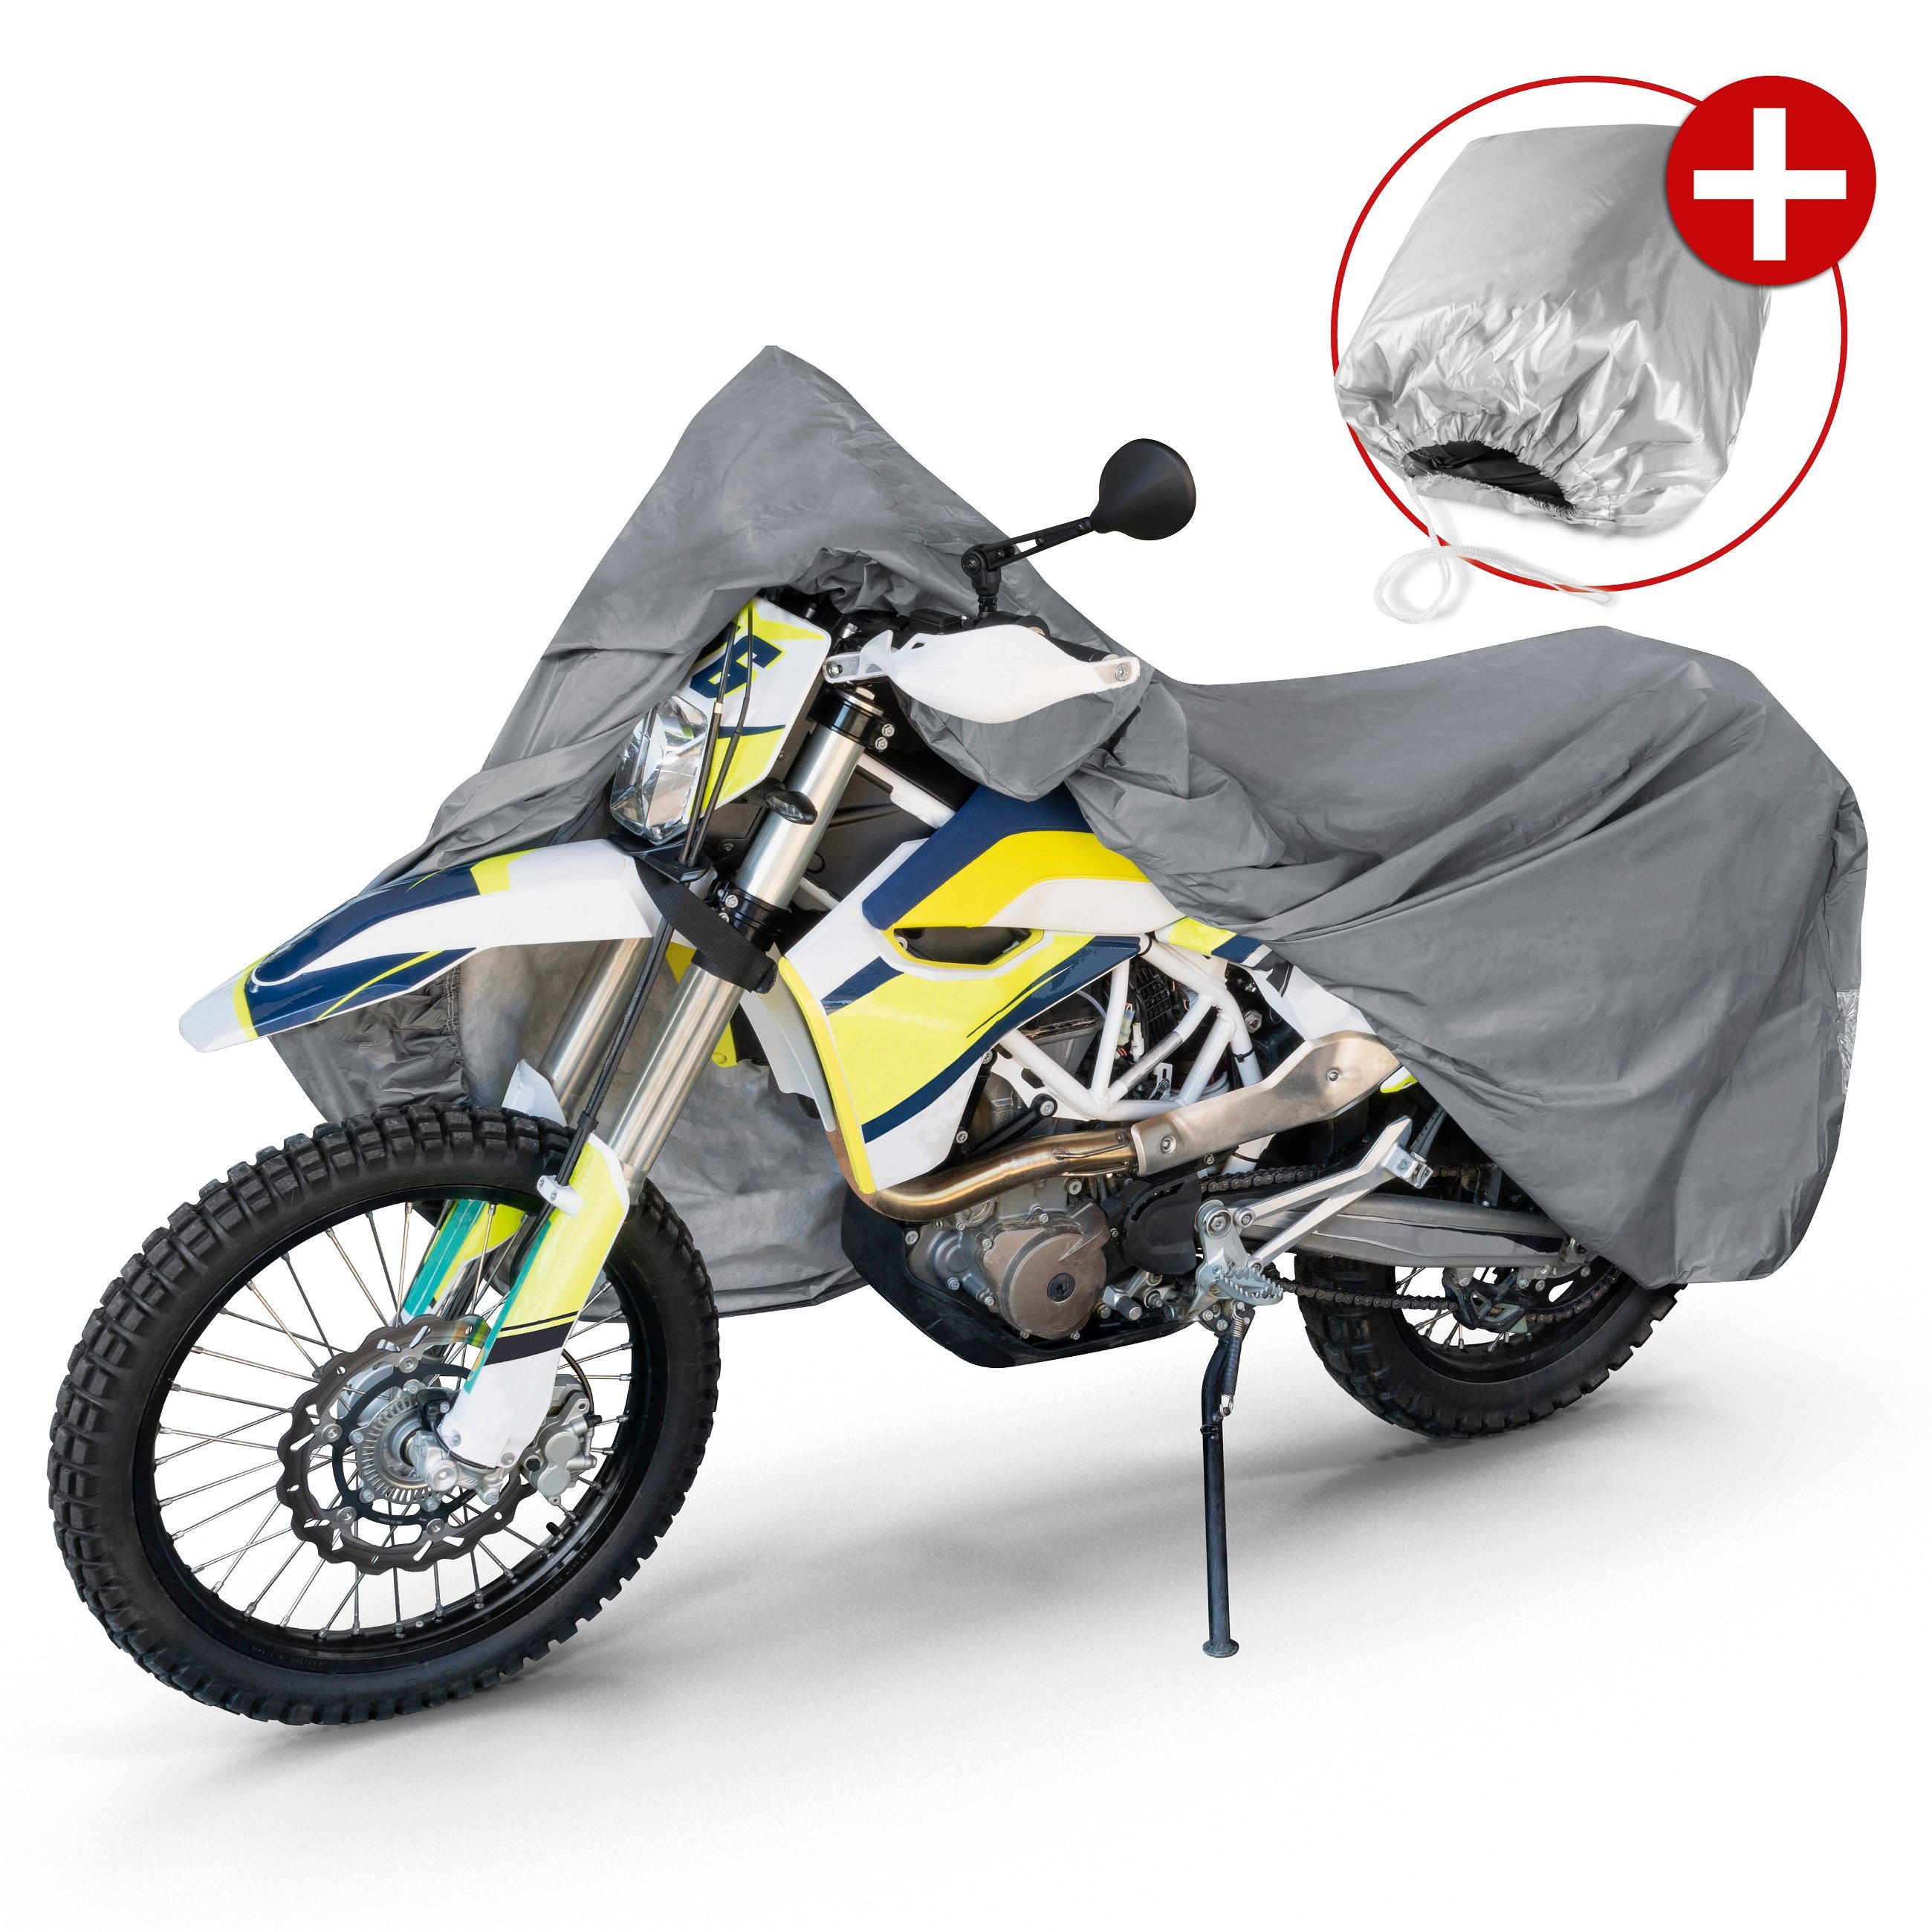 Motorfietsgarage Enduro maat XL, PVC hoes - 255x110x135cm grijs, motorhoes, motorhoes waterdicht, motorfiets beschermhoes